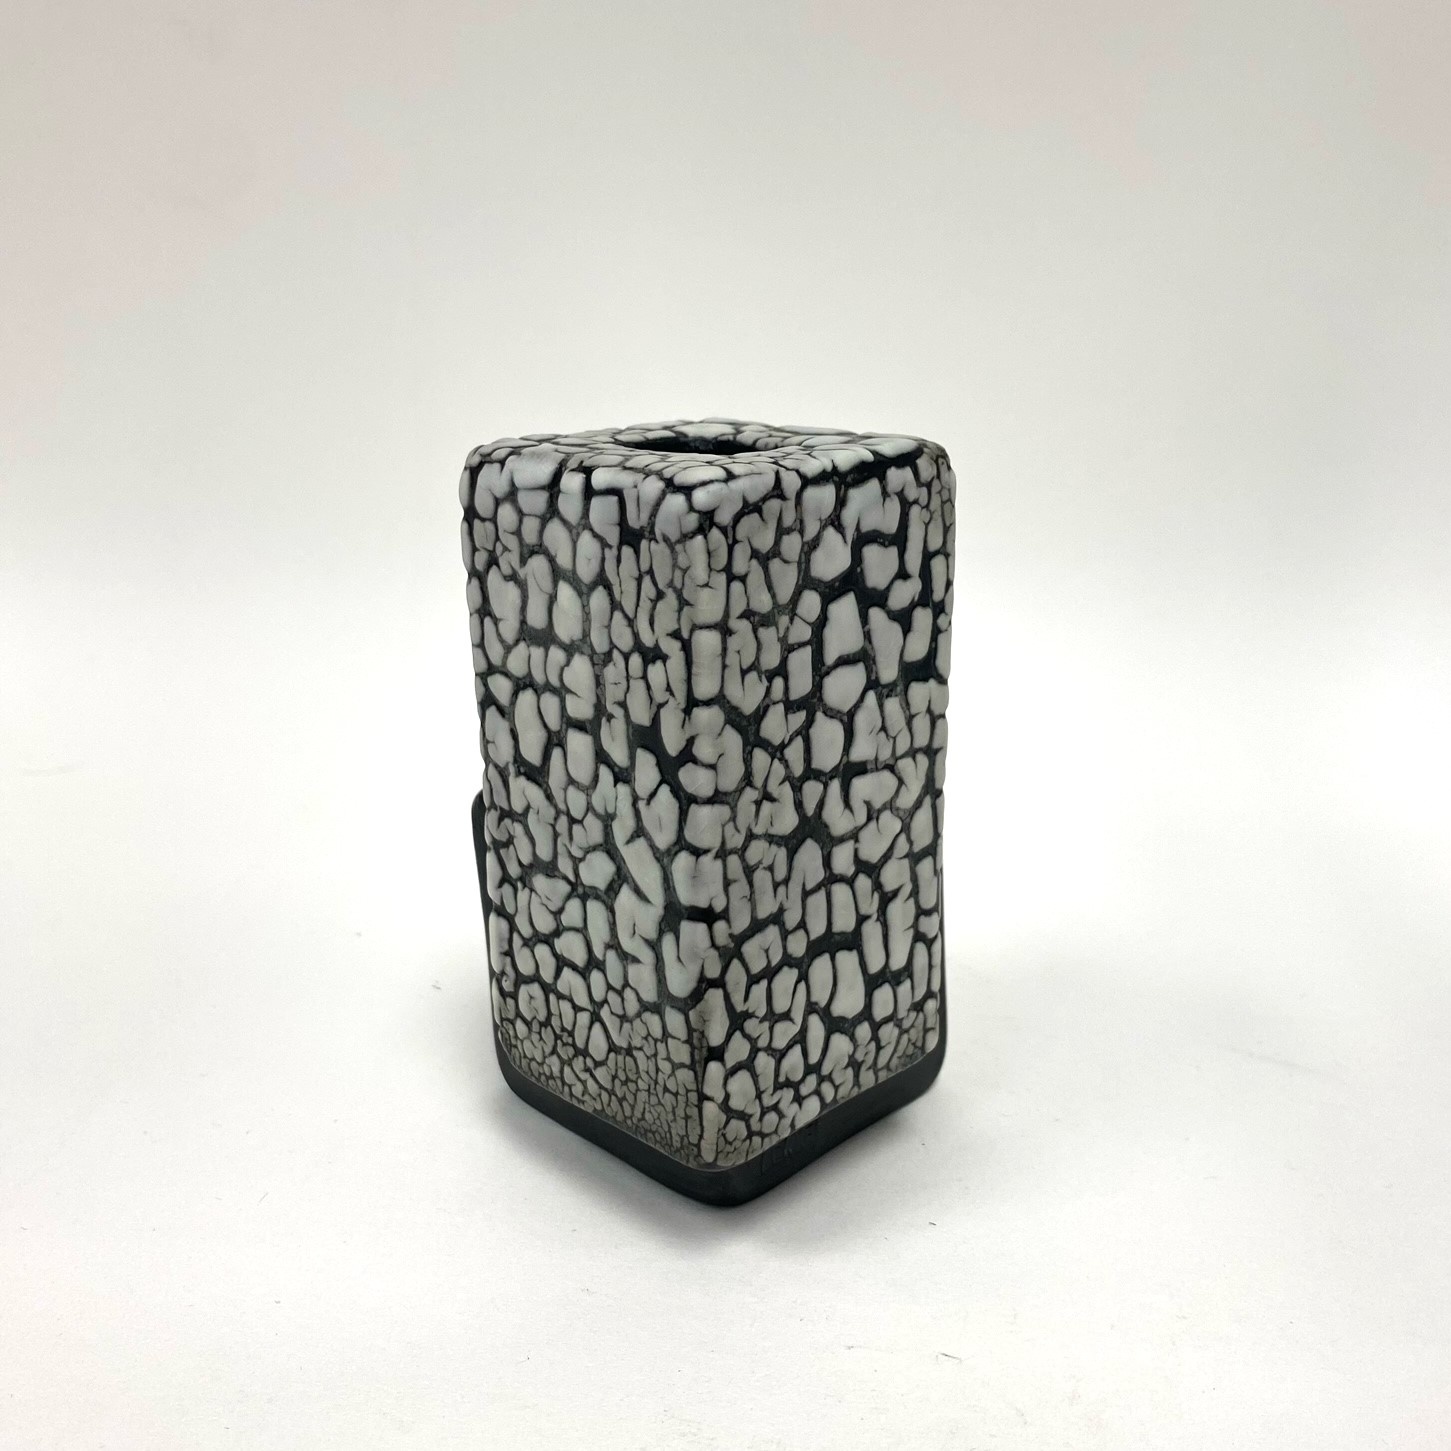 Pierre Bounaud Double Cube vases